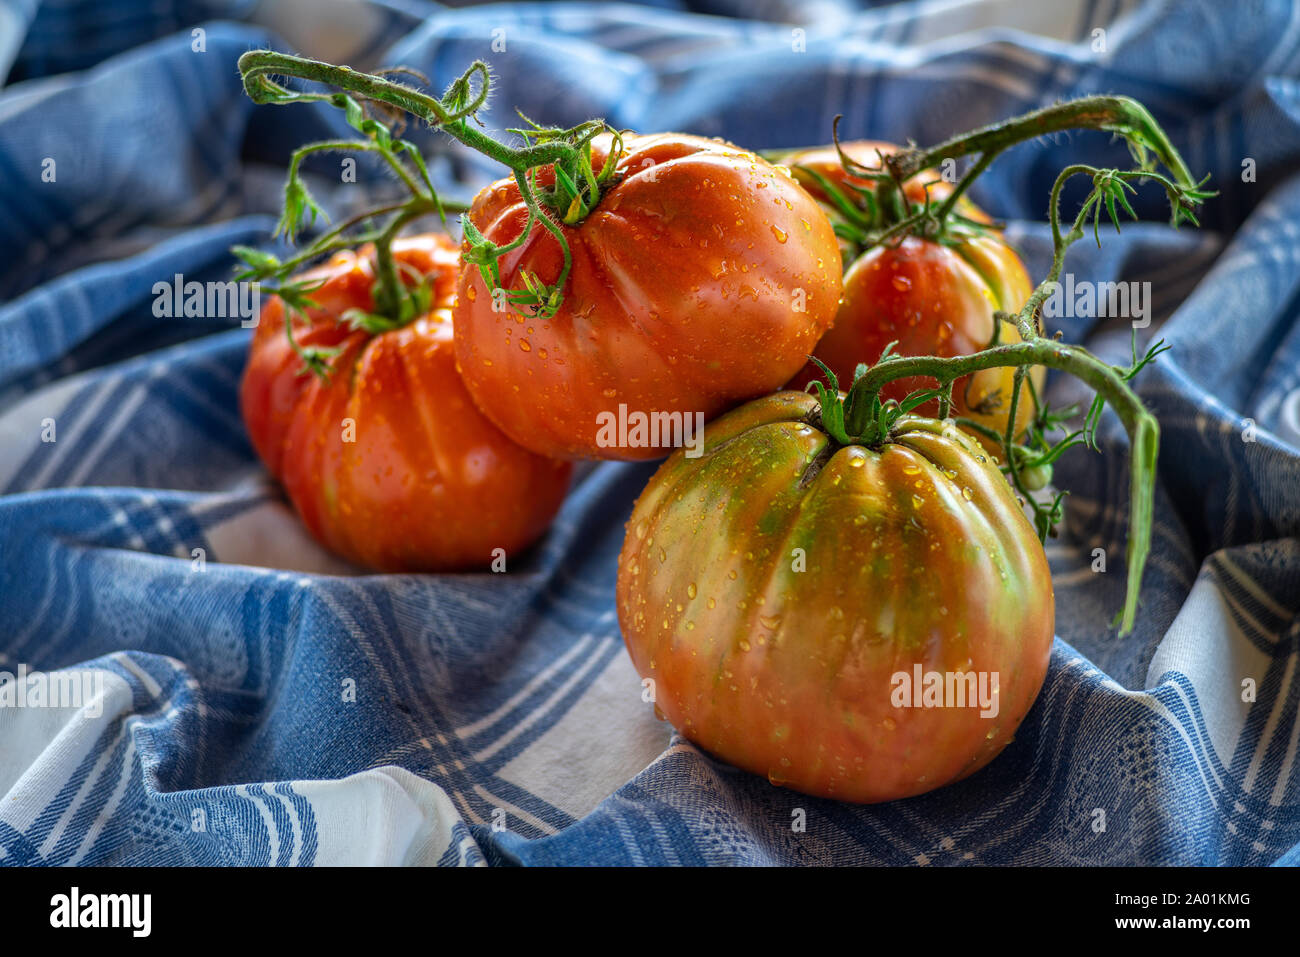 Groupe de tomates coeur de boeuf sur table cloth Banque D'Images